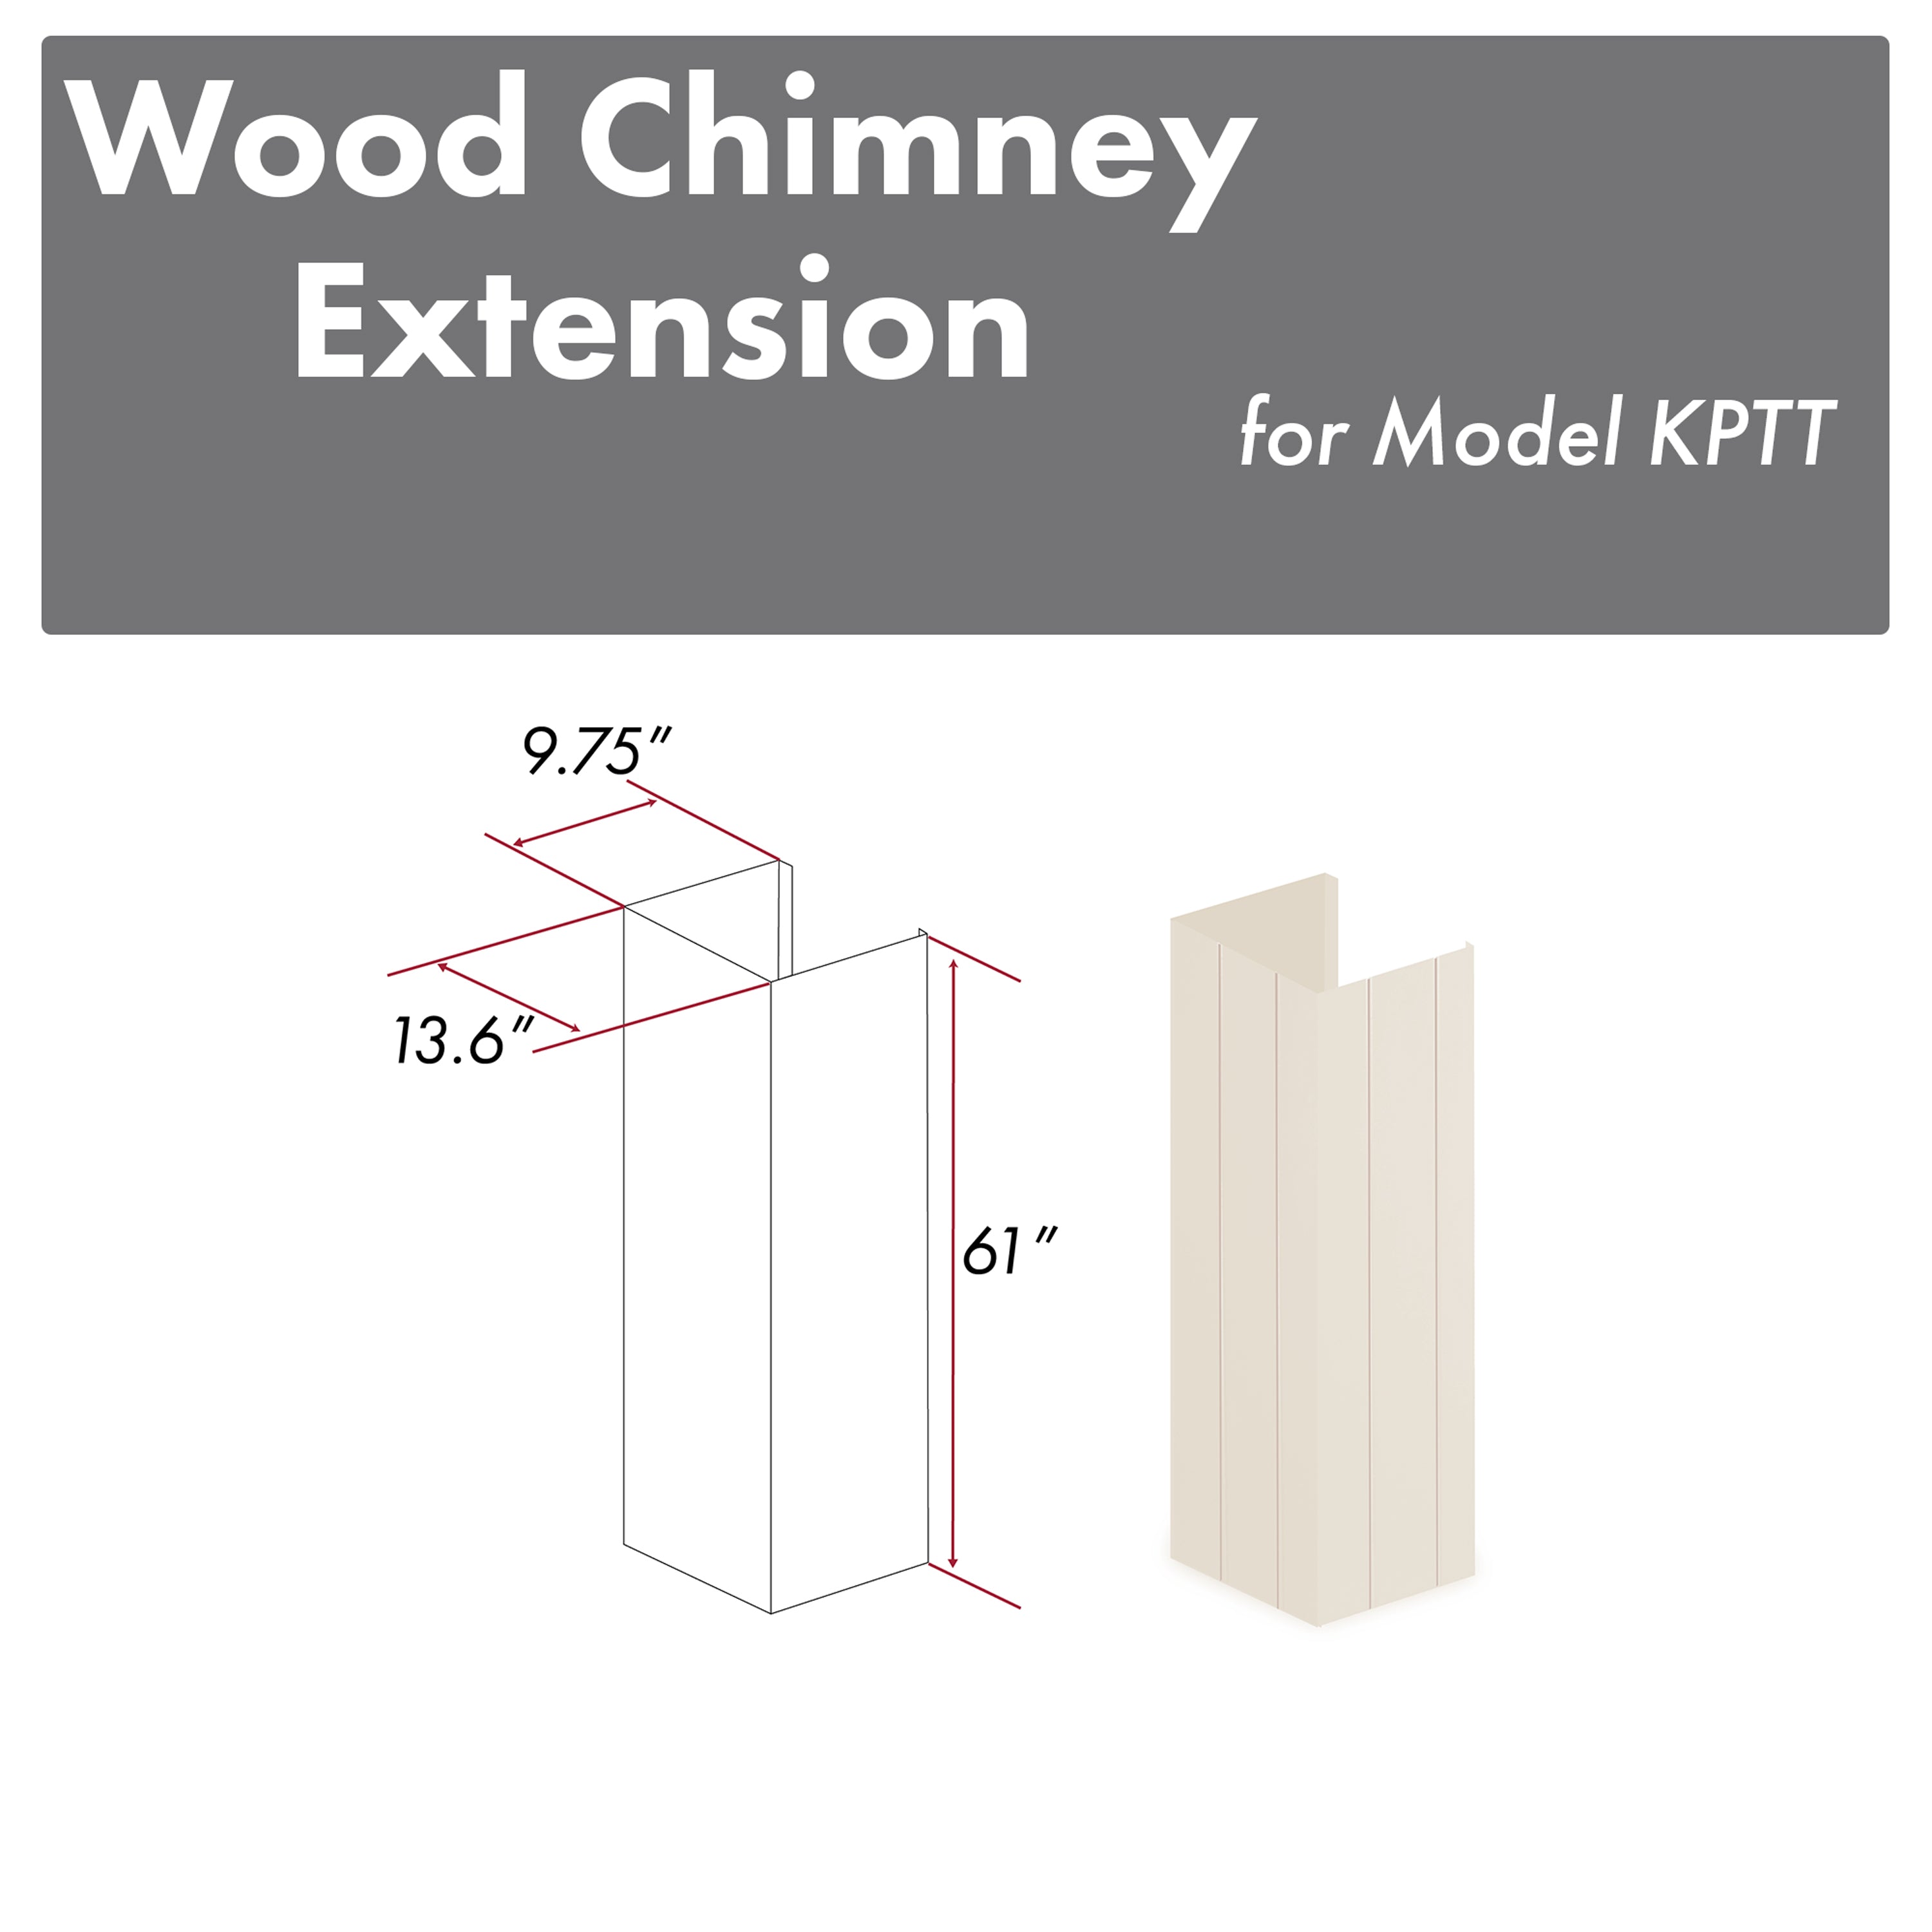 ZLINE 61" Wooden Chimney Extension for Ceilings up to 12 ft. (KPTT-E)